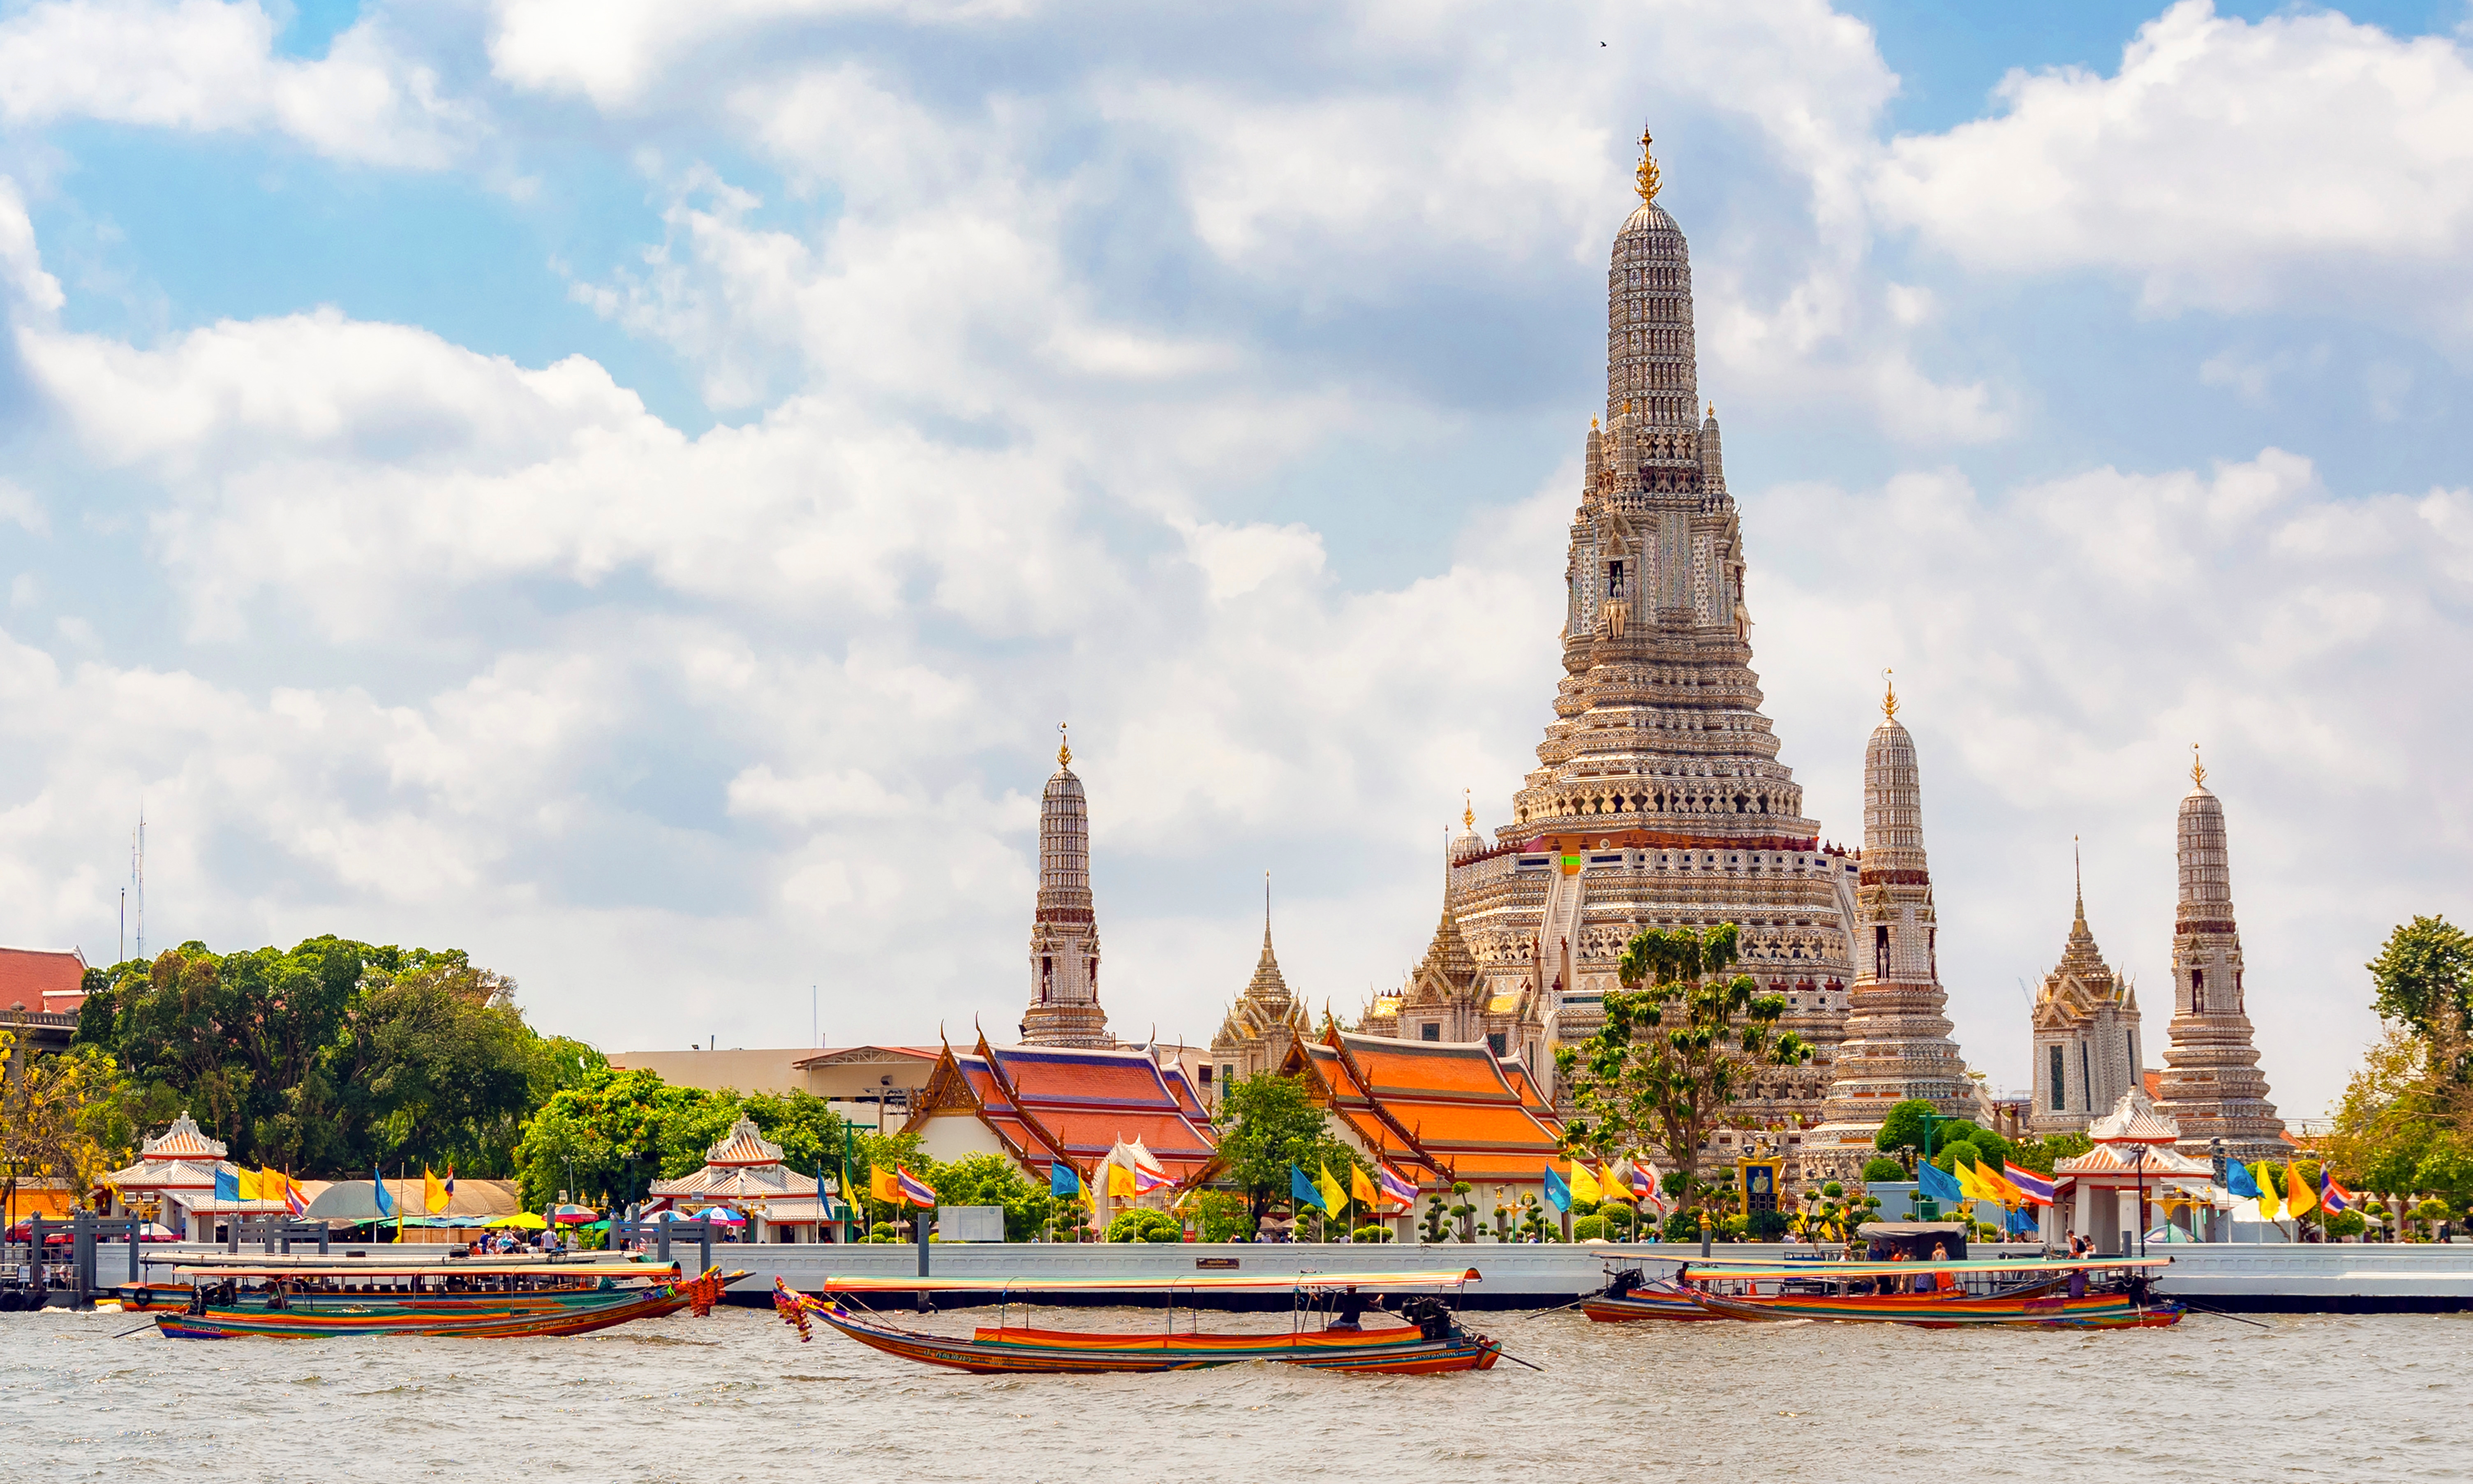 ¡Tailandia: Bangkok + Phuket! 10 días y 7 noches en Hoteles 4* + Visita de los Templos! Incluye Vuelos Directos + Traslados + Seguro de viaje